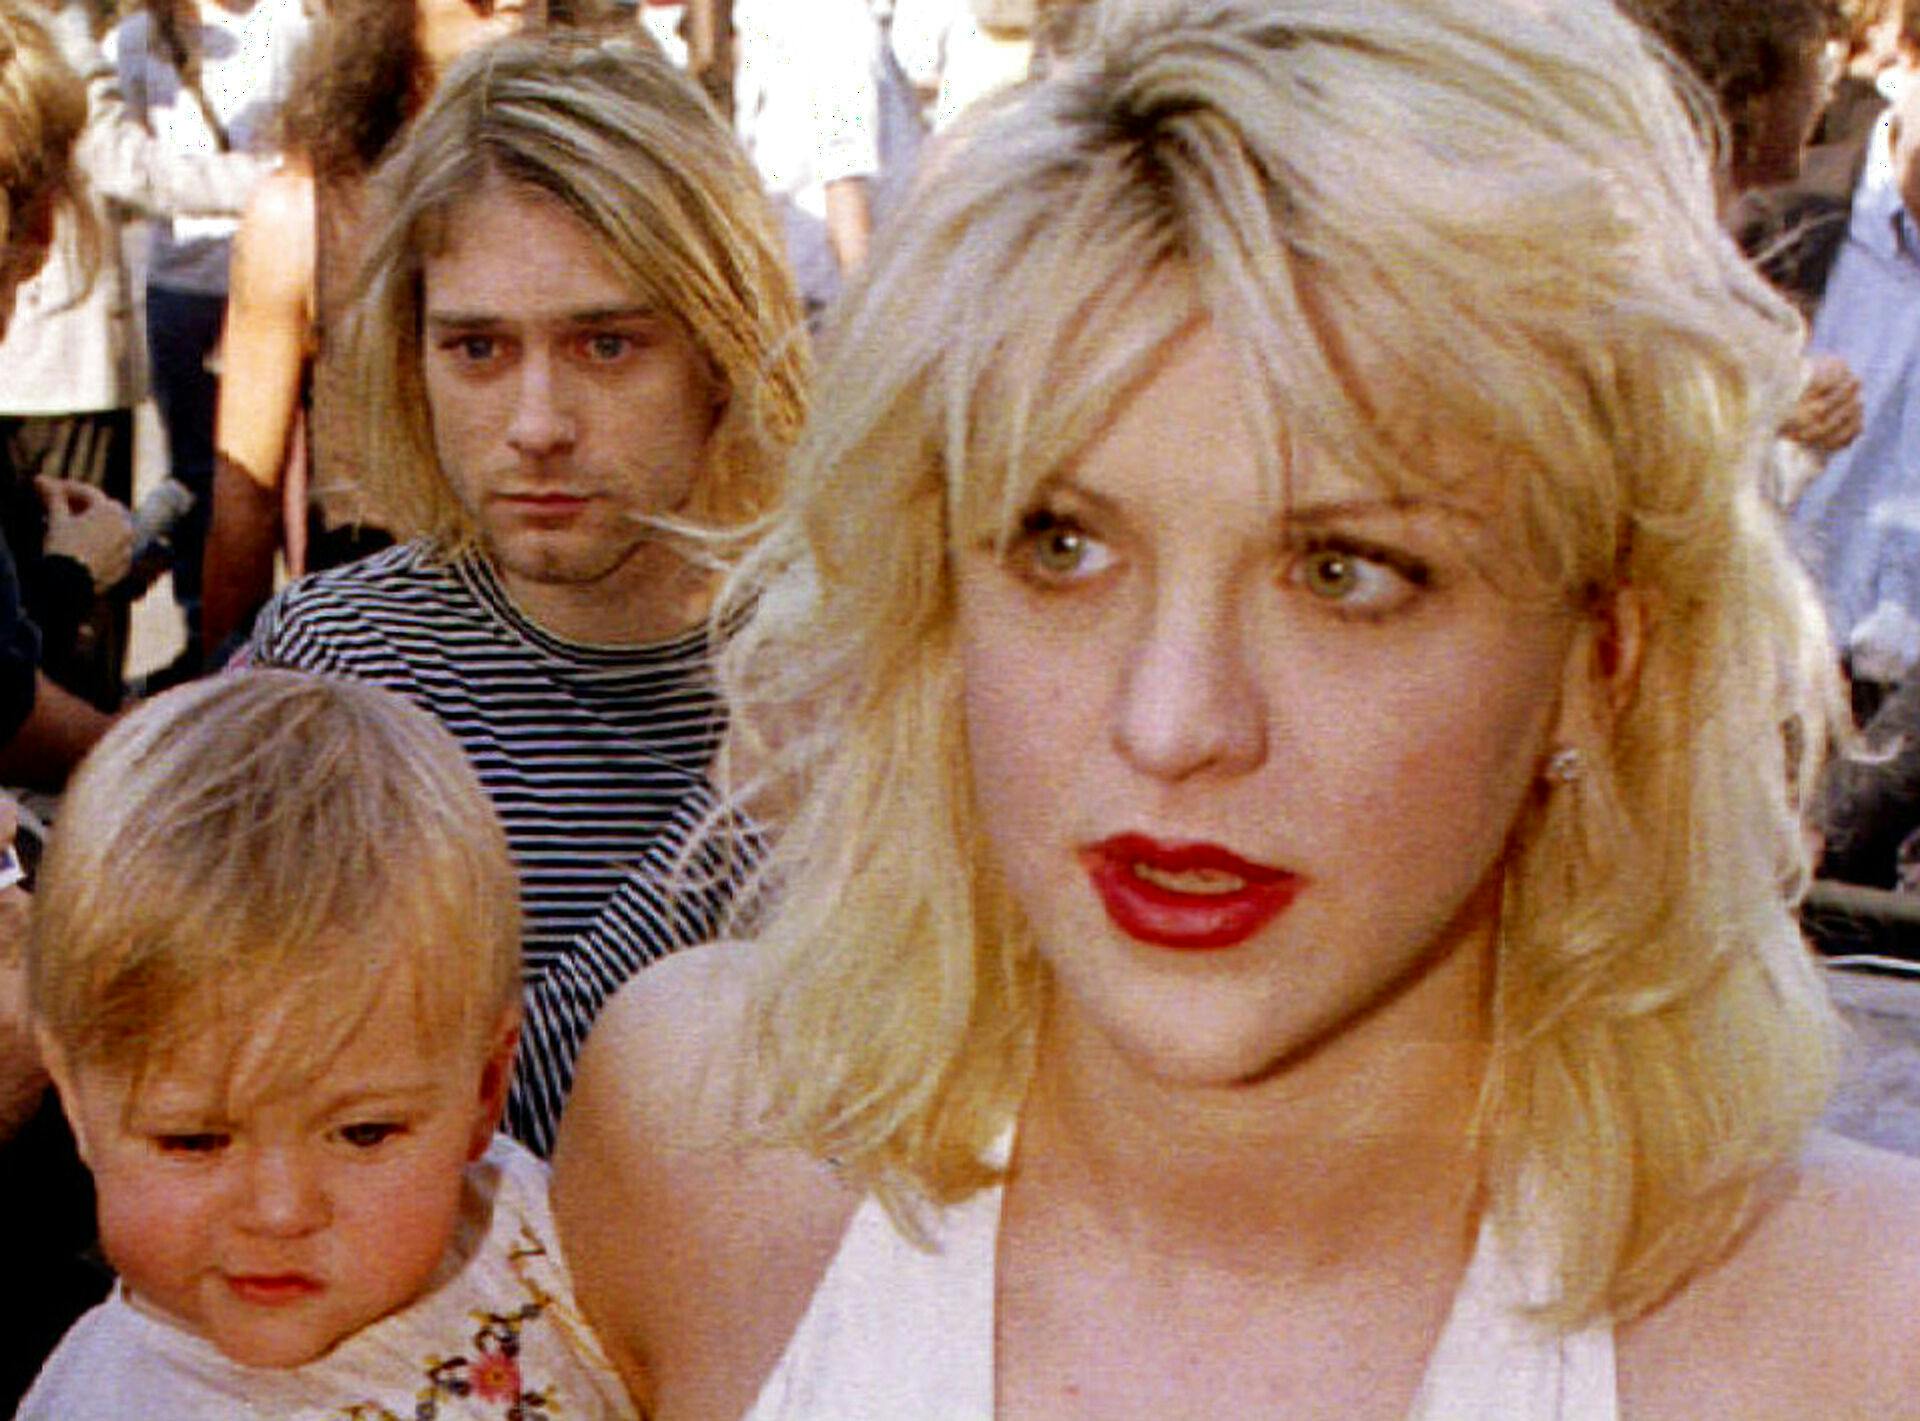 Arkivfoto fra 1992 af Kurt Cobain og Courtney Love med datteren, Frances Bean Cobain.
